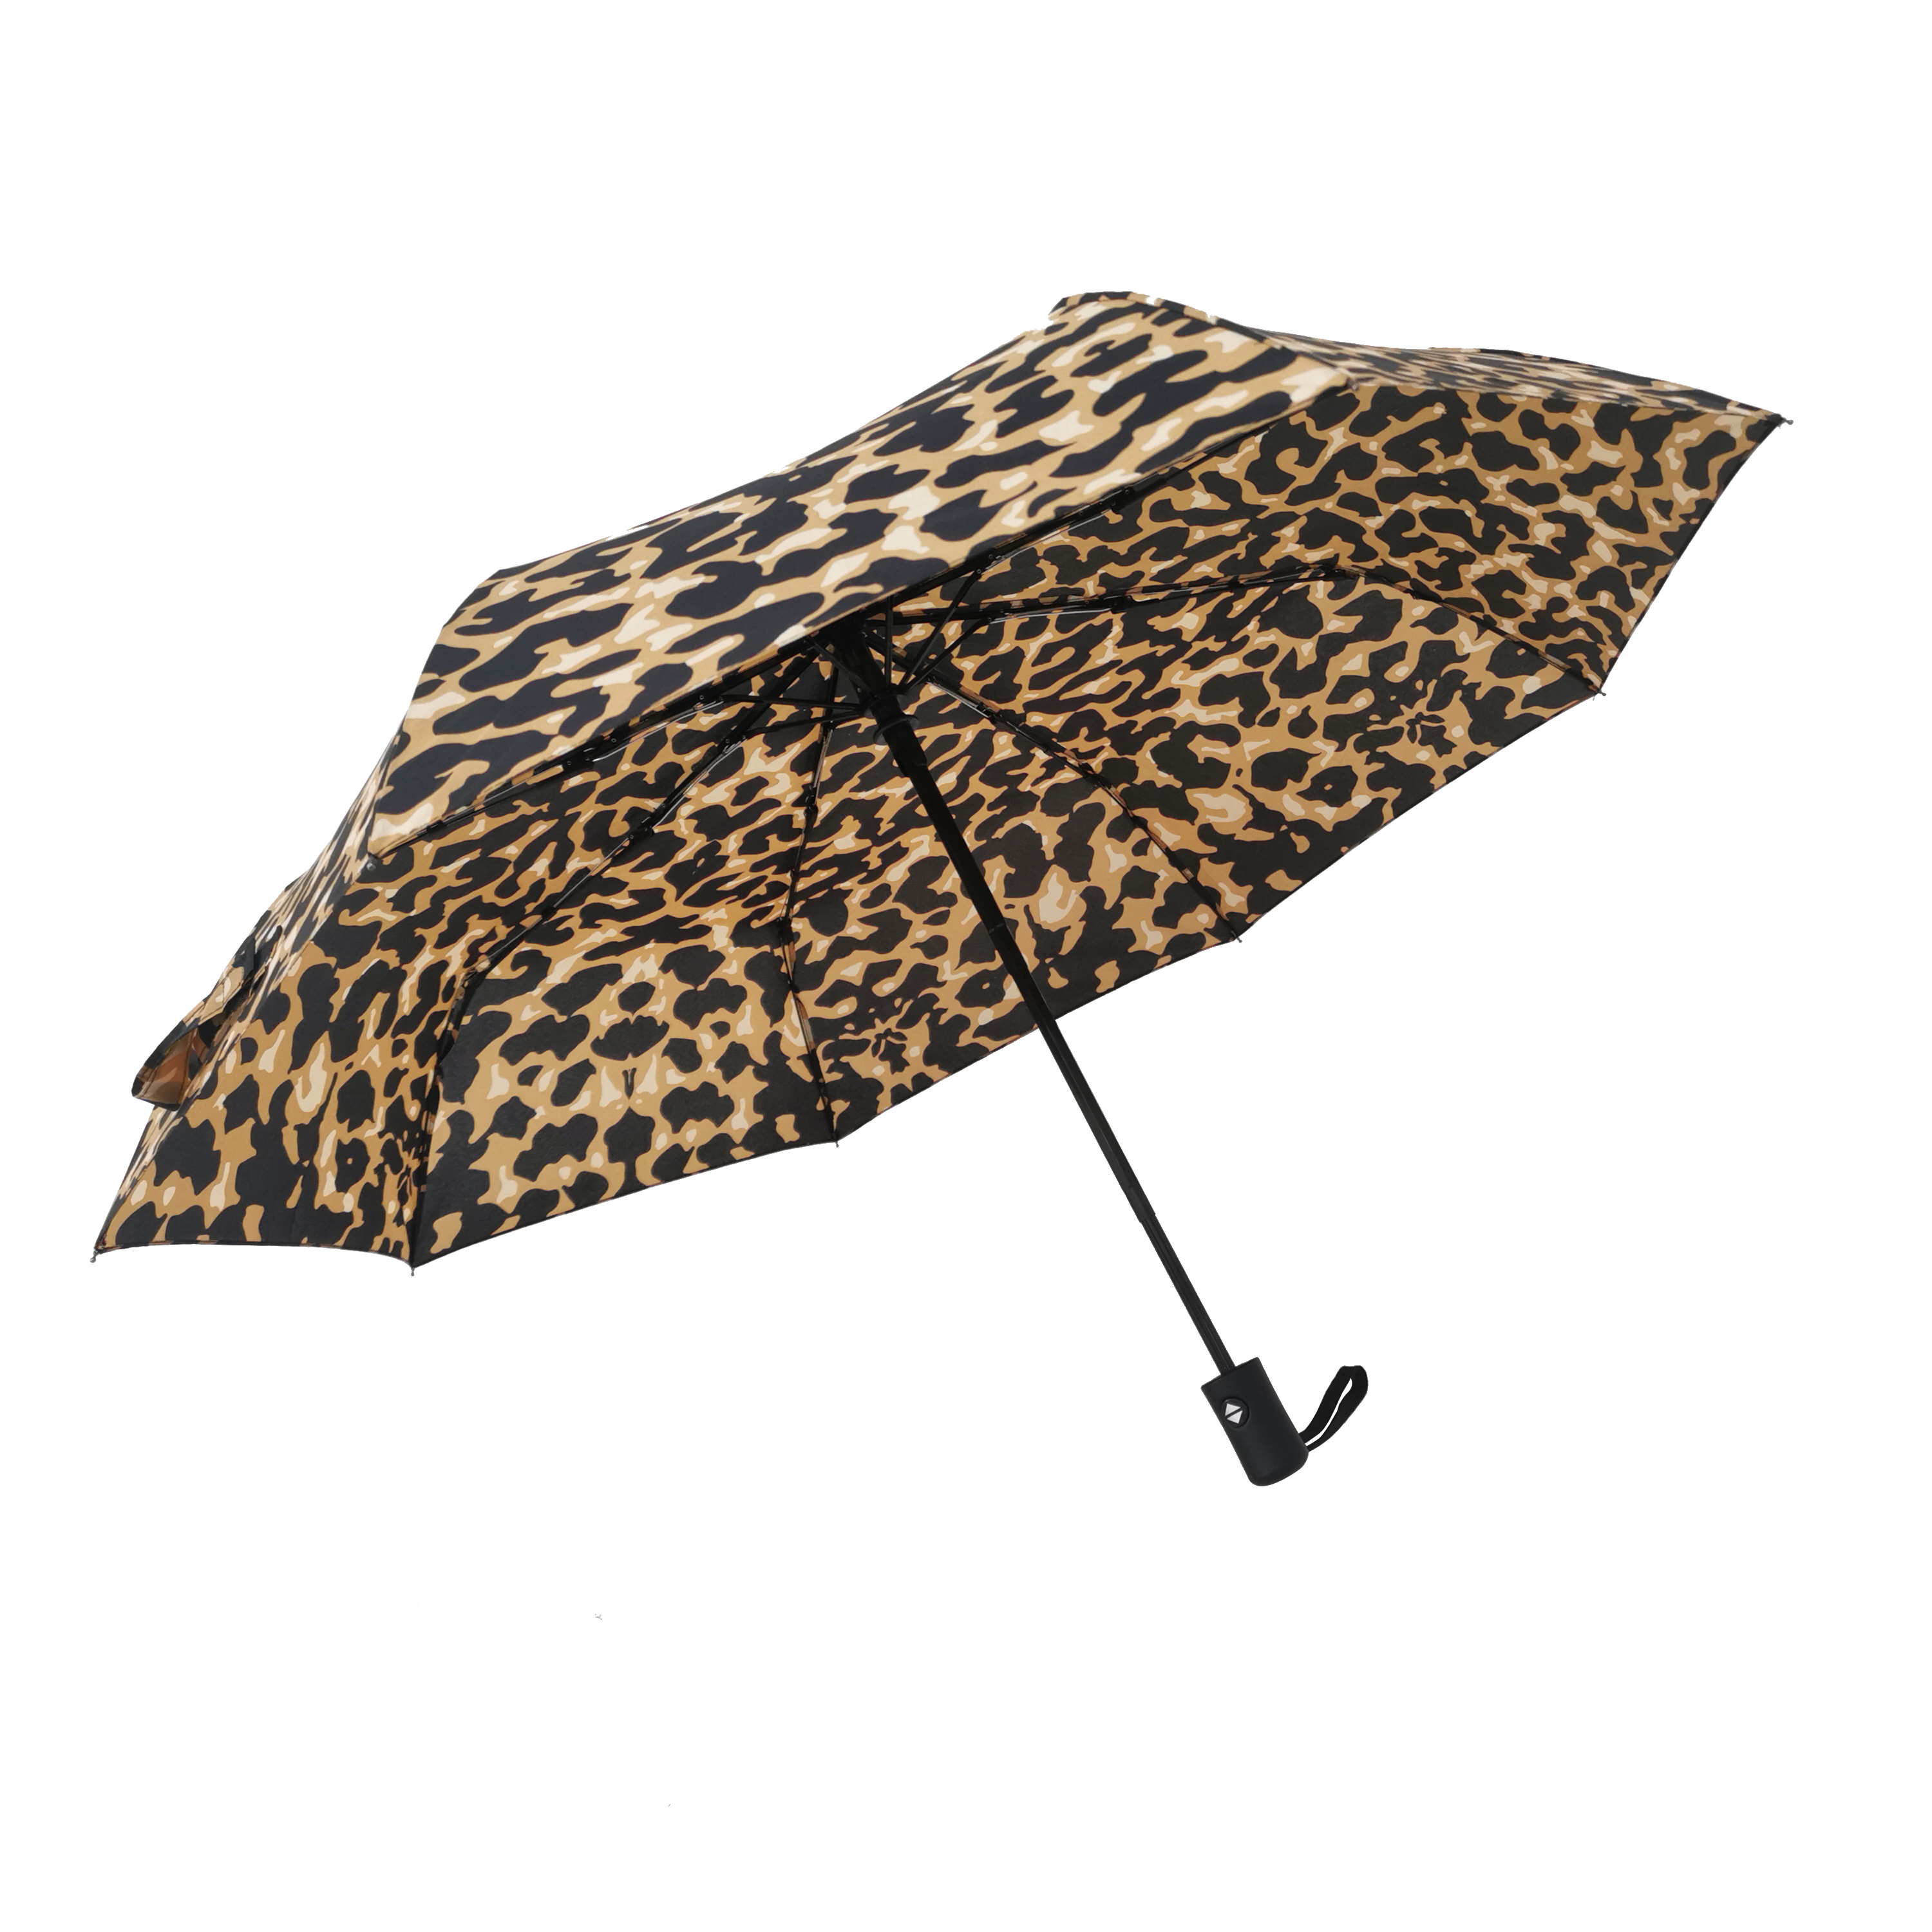 https://www.hodaumbrella.com/ultra-low-pric..lding-umbrella-product/